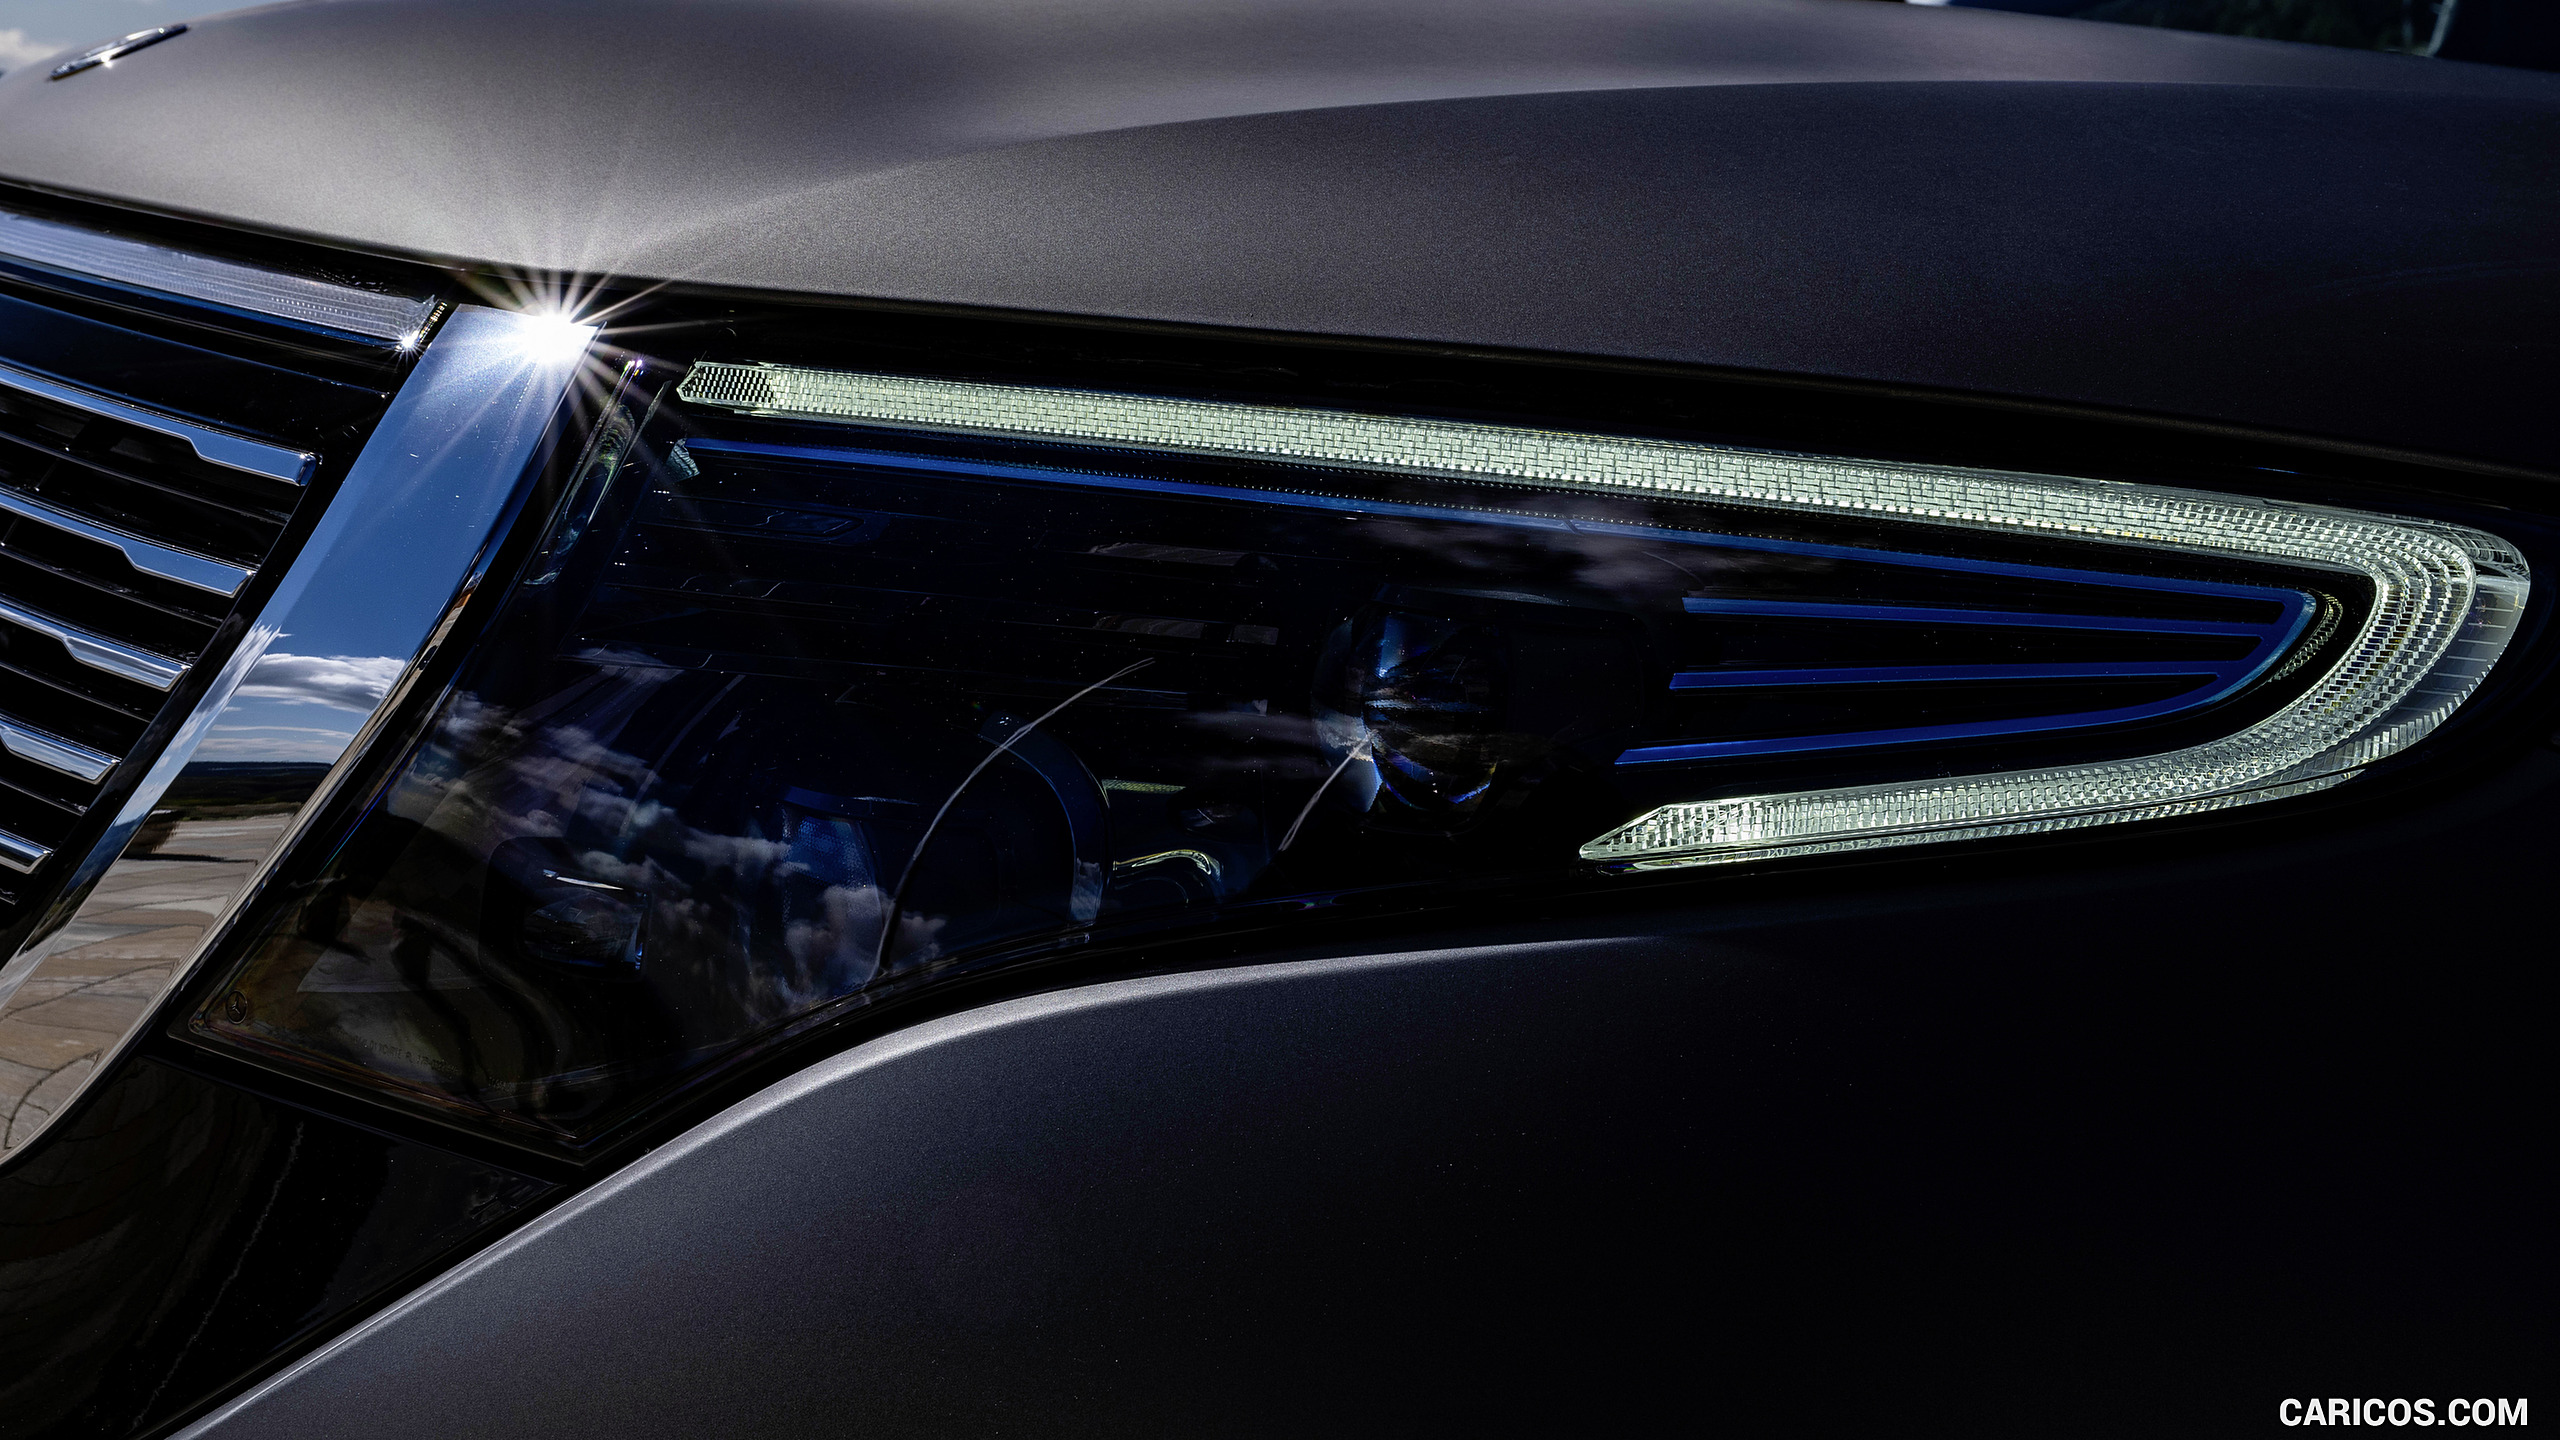 2020 Mercedes-Benz EQC 4x4² Concept - Headlight, #26 of 30